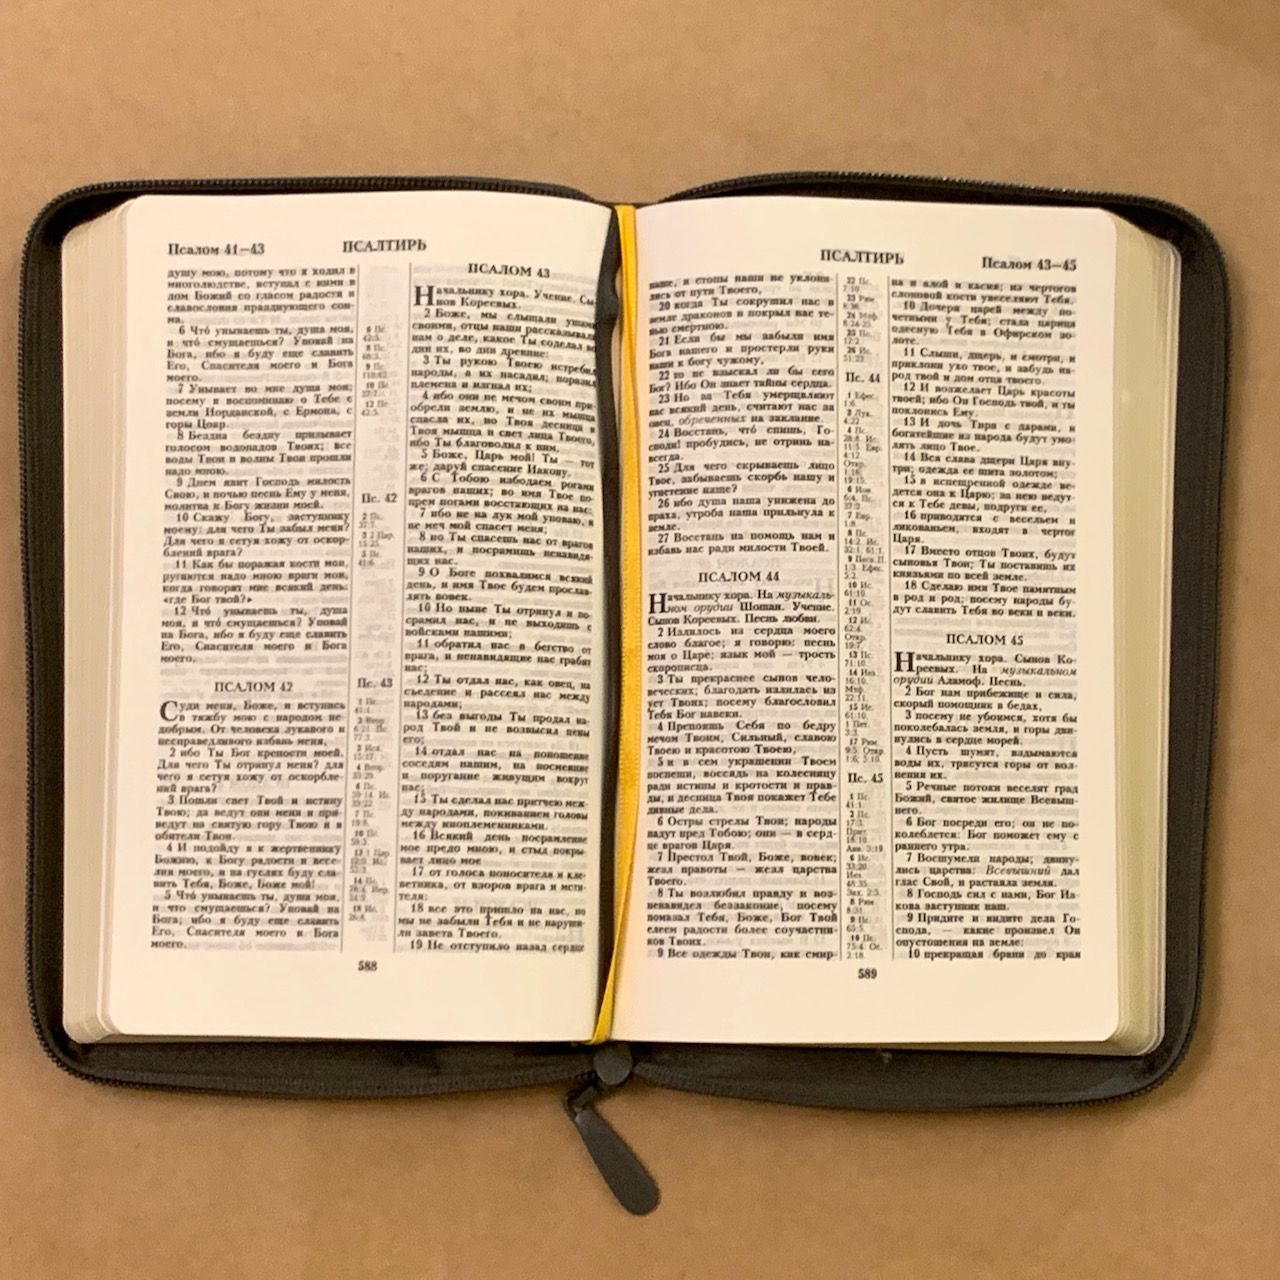 Библия 055z код D1 7074 переплет из искусственной кожи на молнии, цвет серый графит ребристый, дизайн "голубь", средний формат, 143*220 мм, параллельные места по центру страницы, золотой обрез, крупный шрифт